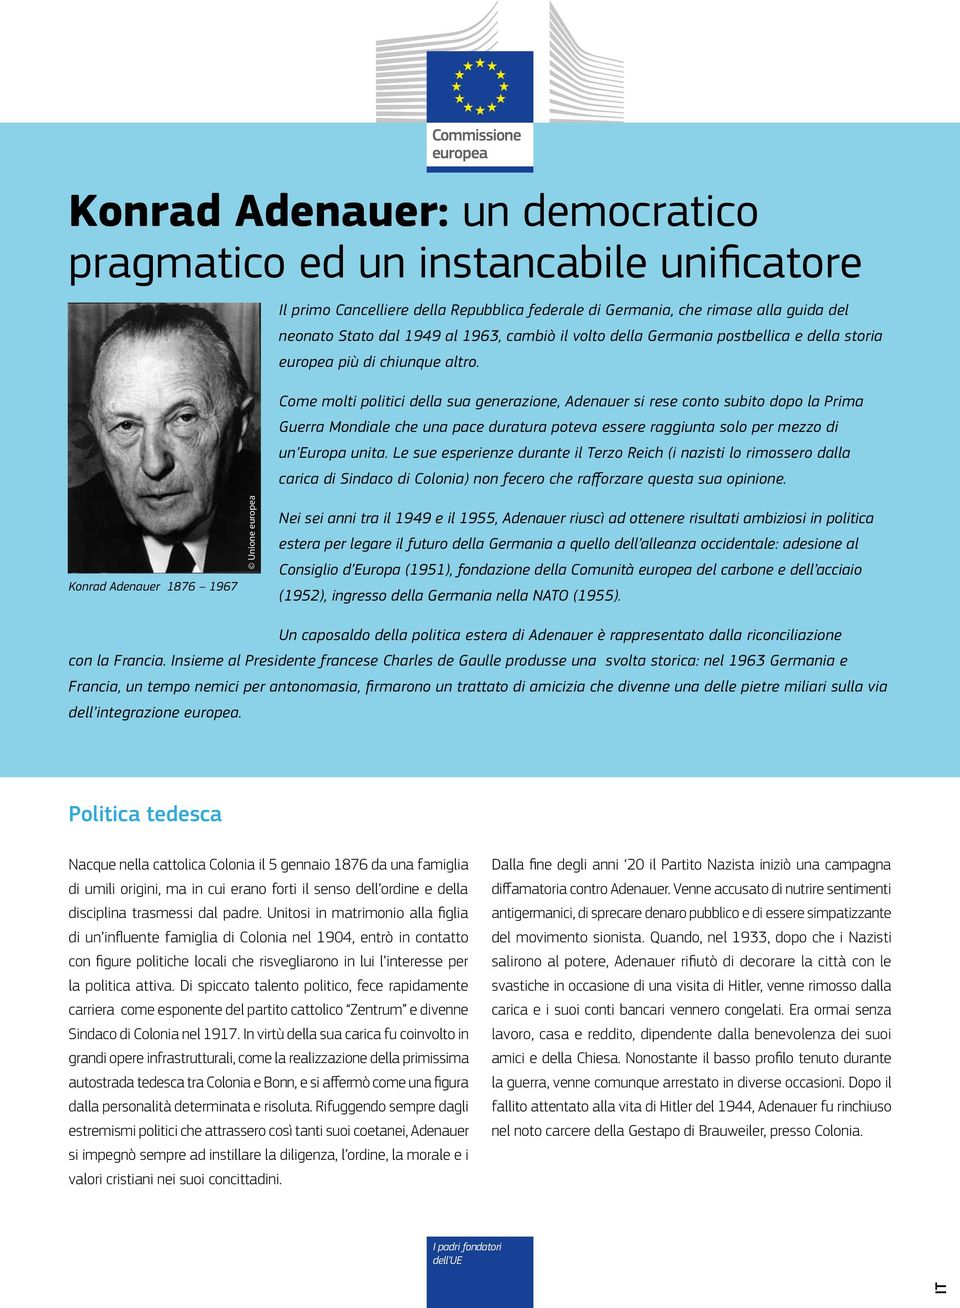 Come molti politici della sua generazione, Adenauer si rese conto subito dopo la Prima Guerra Mondiale che una pace duratura poteva essere raggiunta solo per mezzo di un Europa unita.